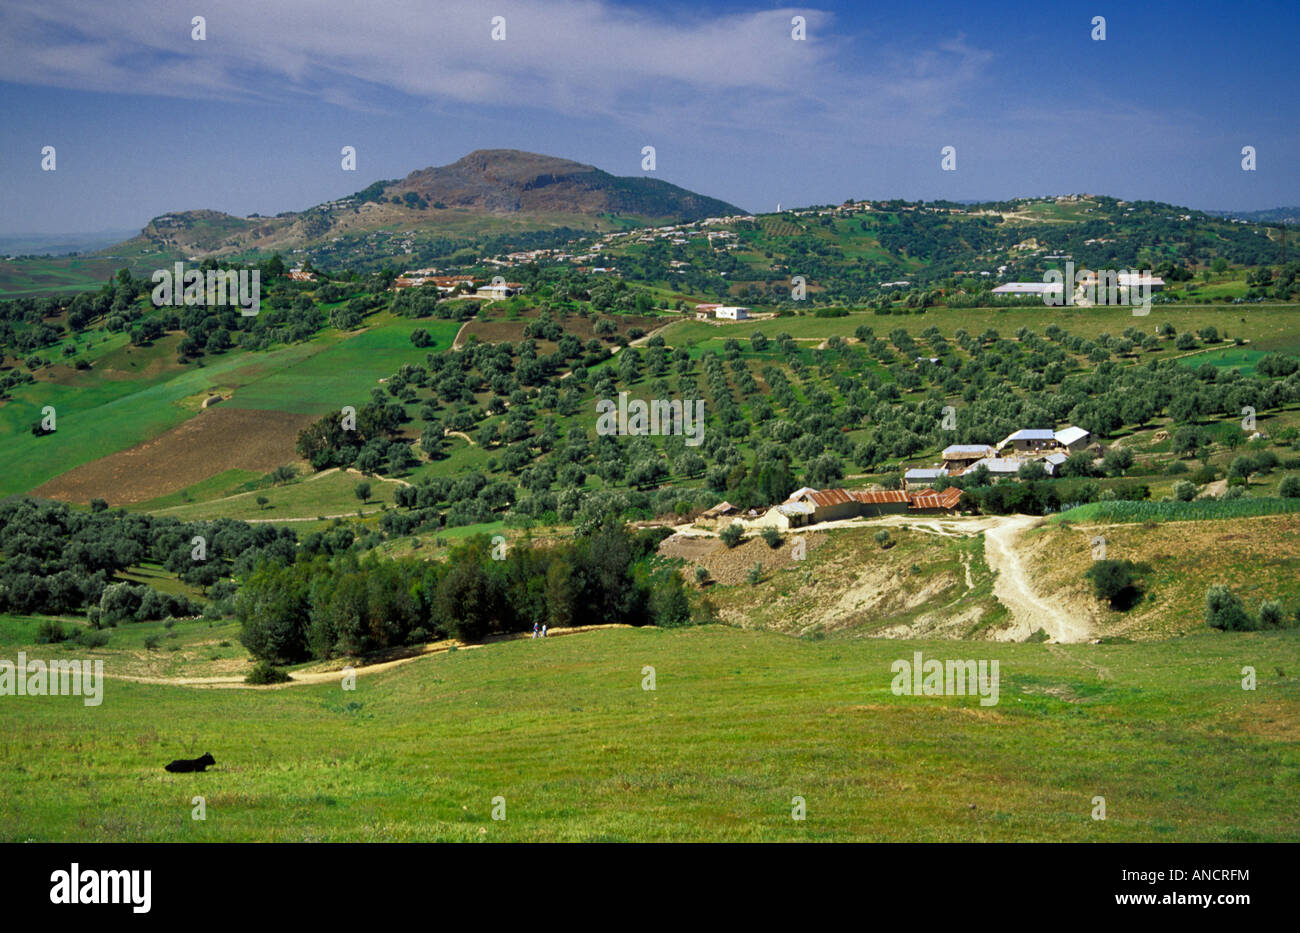 Montagnes du Rif oliviers au sud de Maroc Chefchaouen Banque D'Images